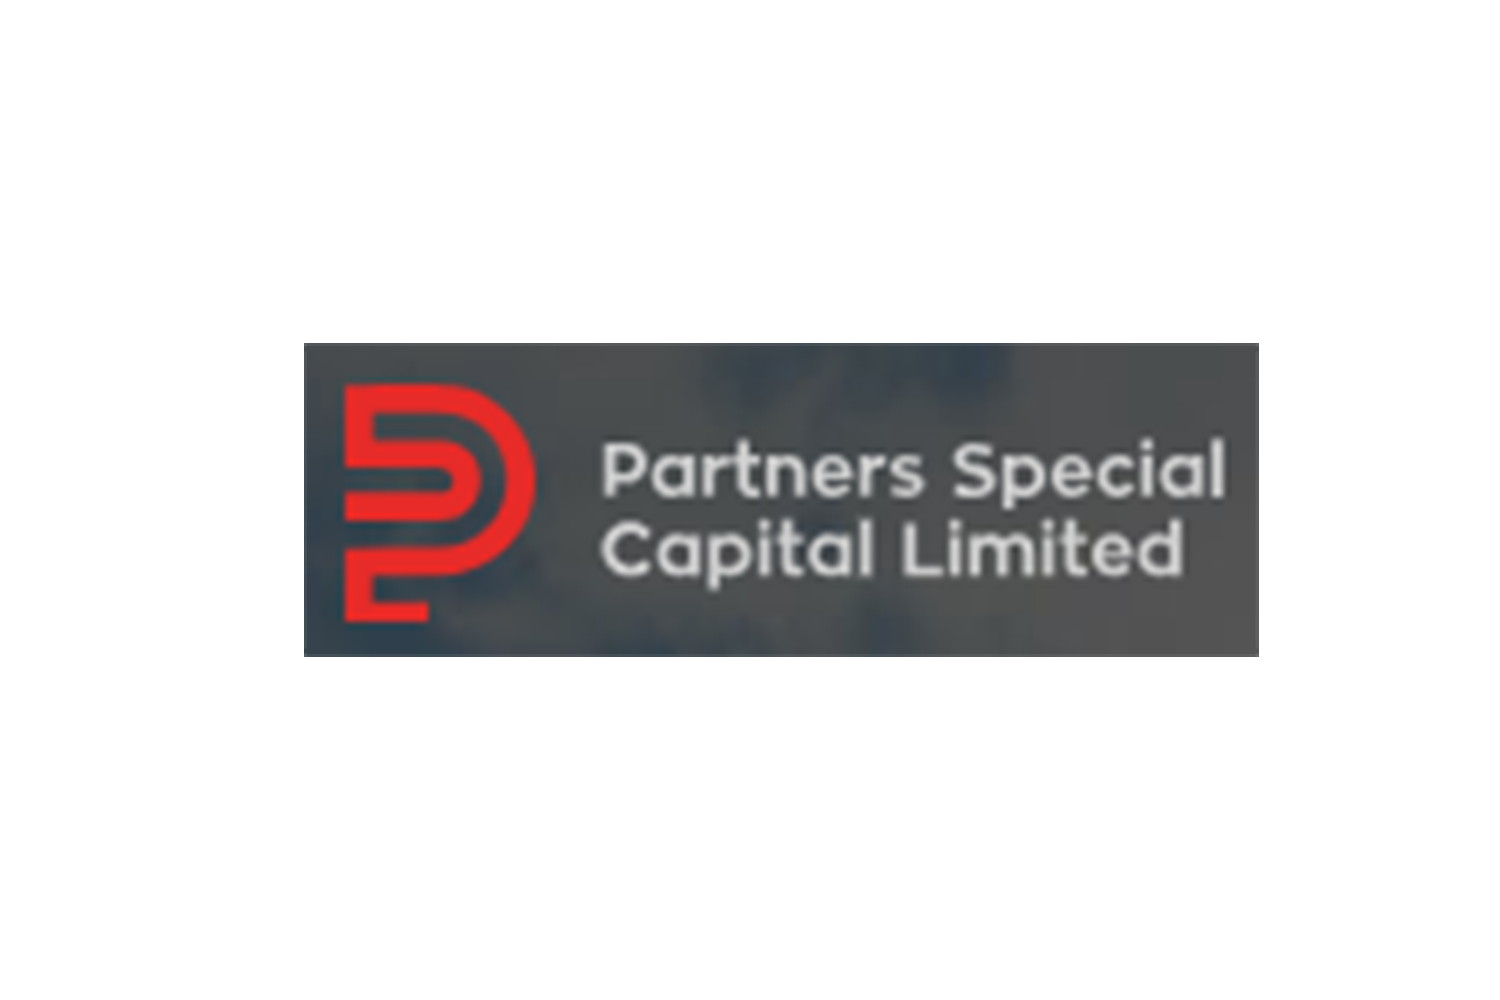 Отзывы о Partners Special Capital Limited: достойный доверия брокер или подлый обман?